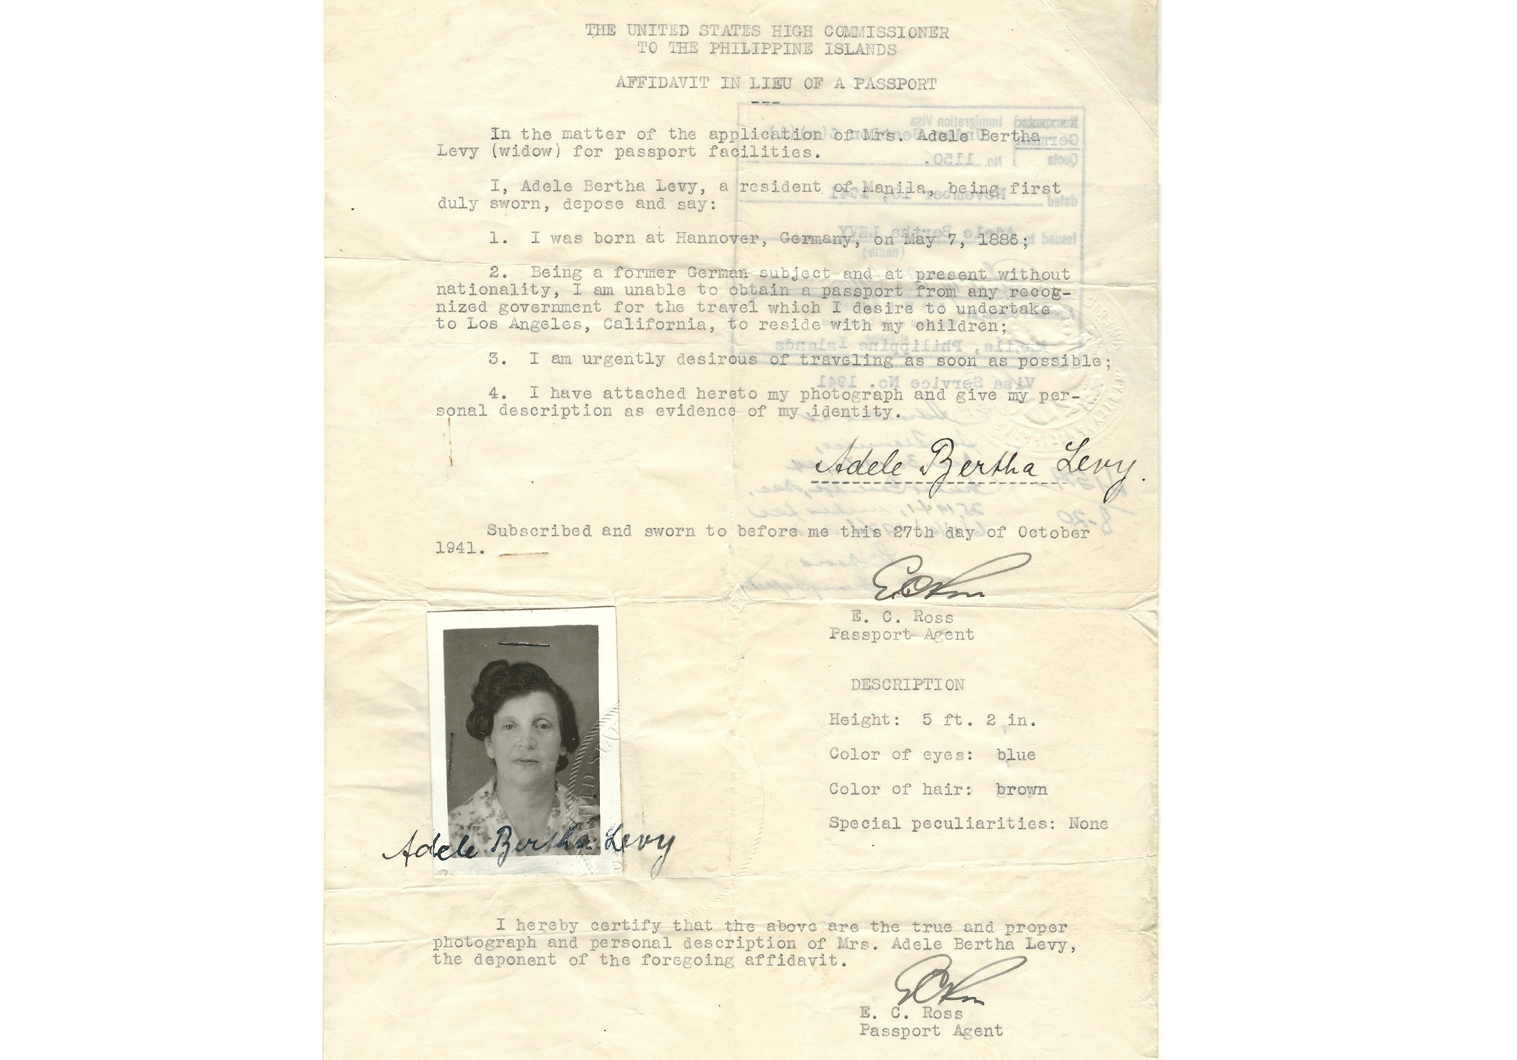 WW2 US stateless travel document